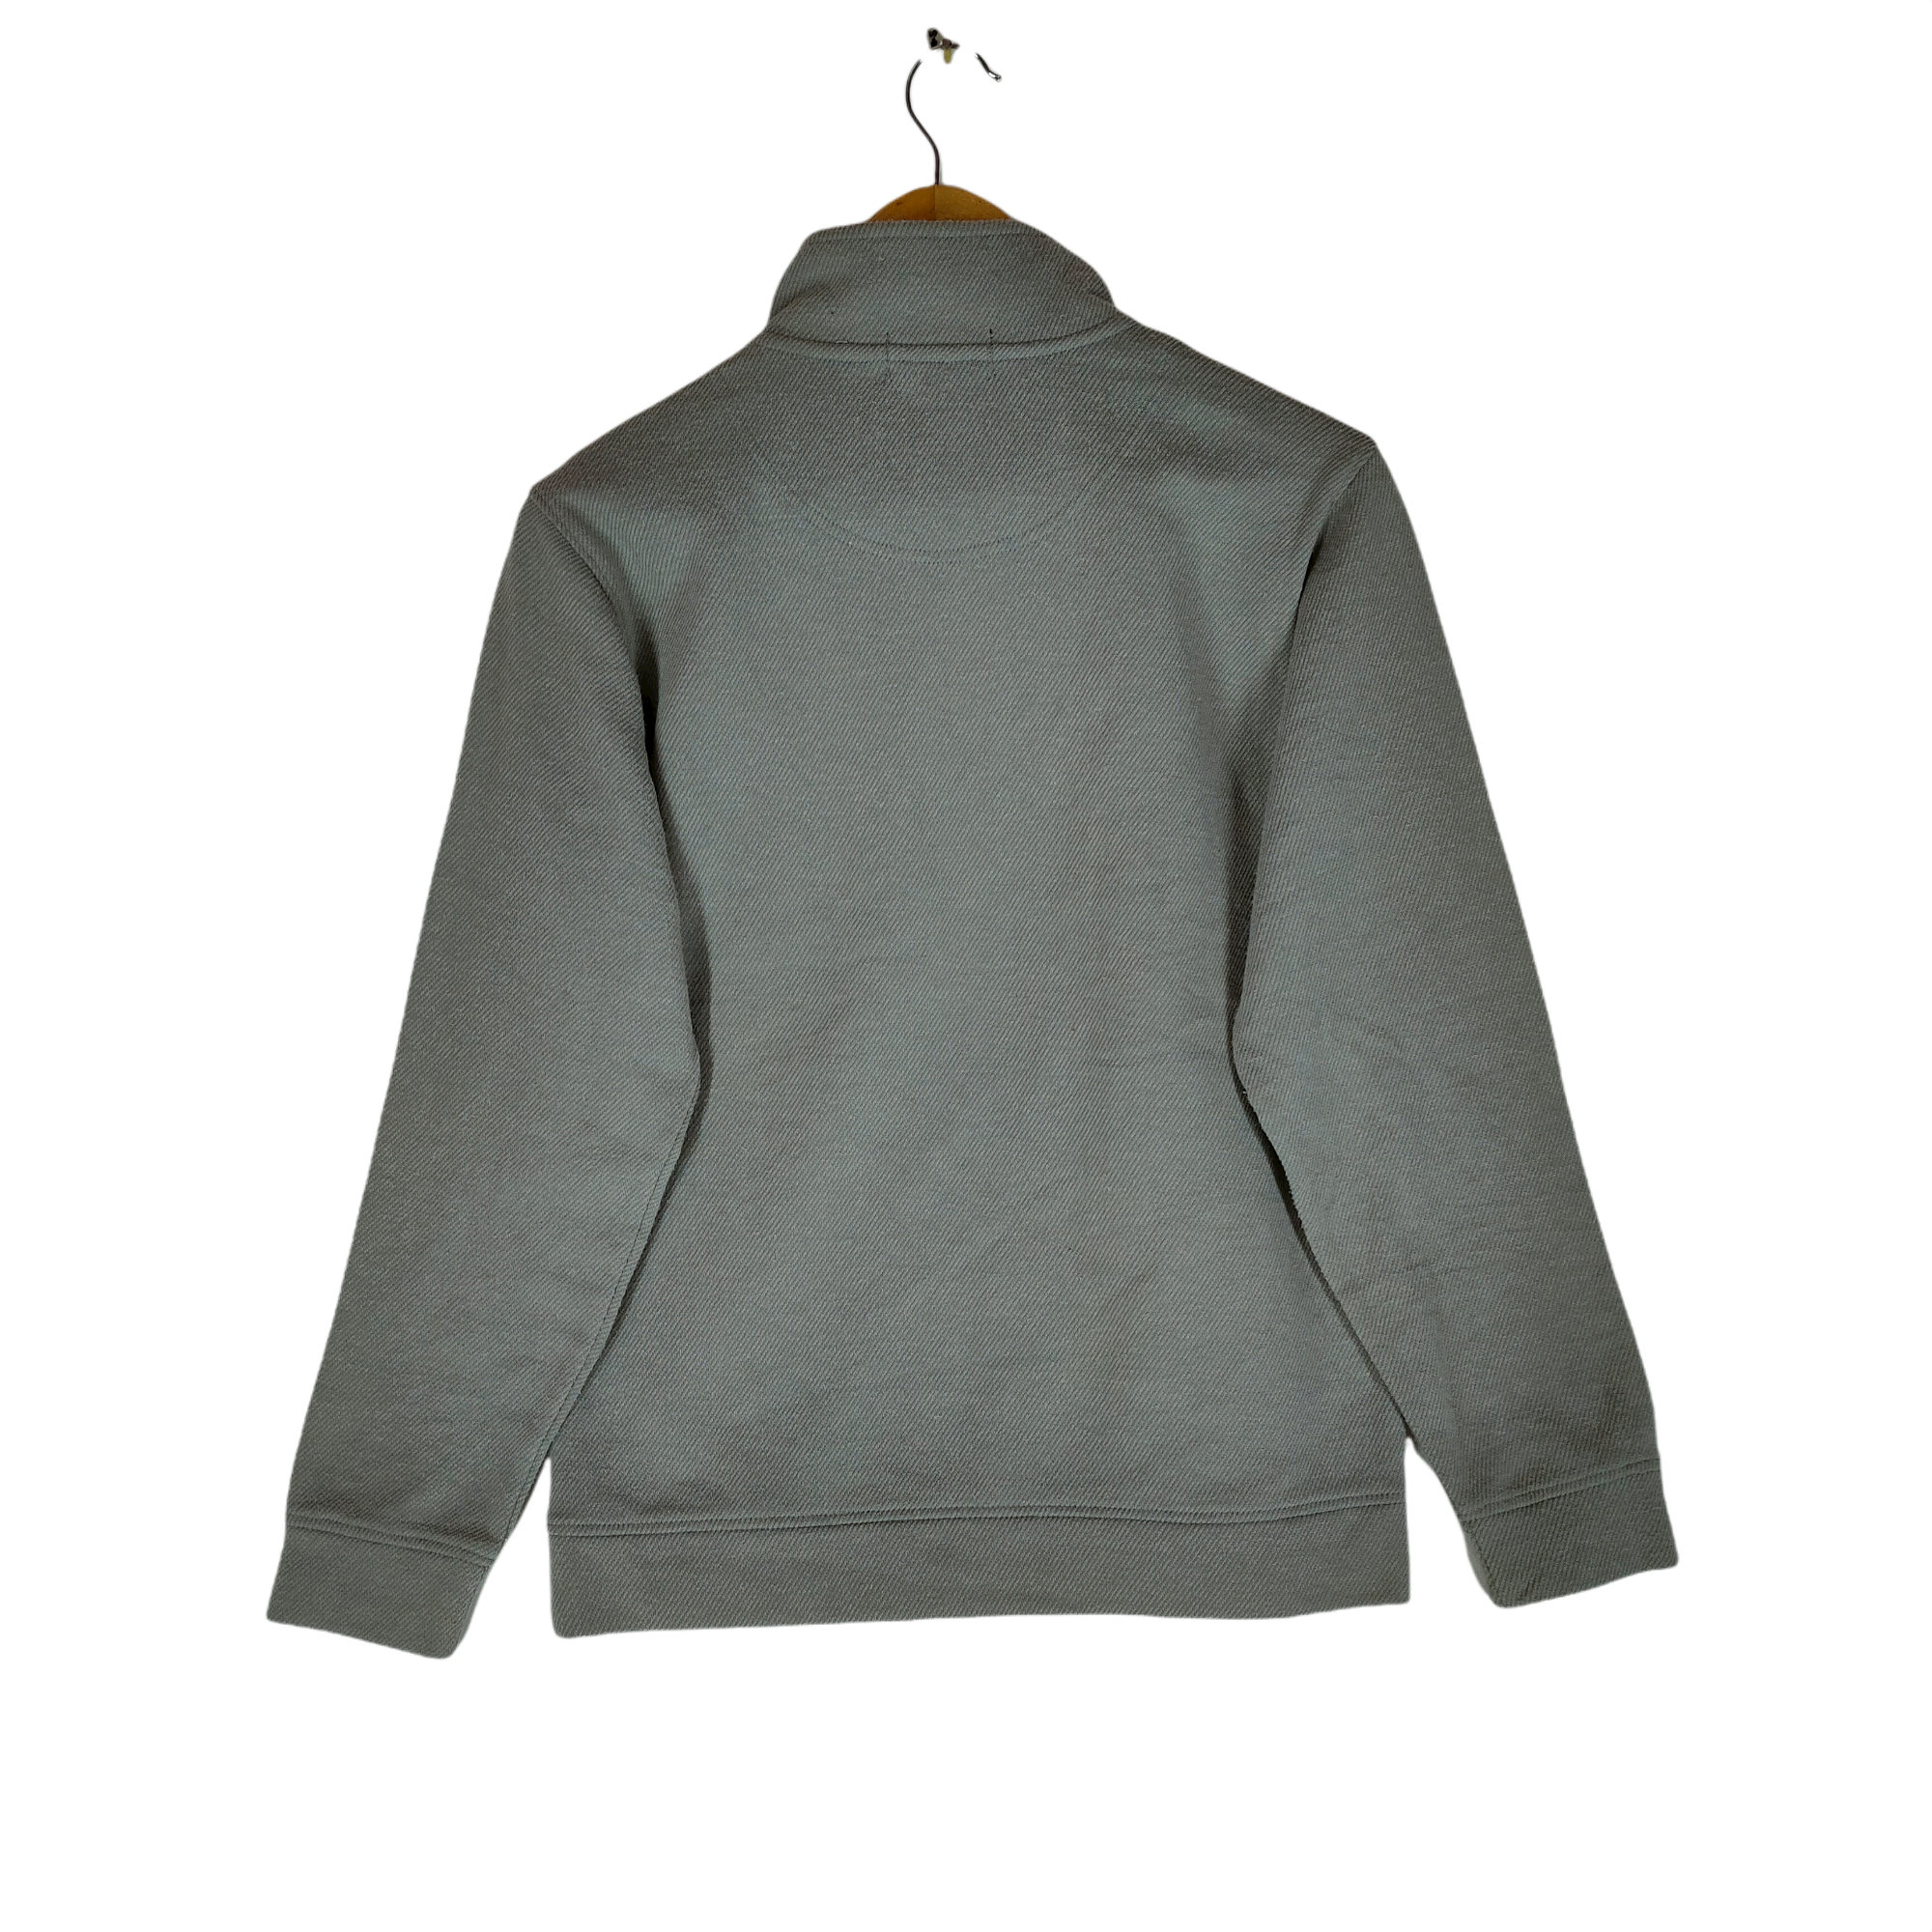 Gianni - GIANNI VALENTINO Embroidery Logo Pocket Fleece Sweatshirt - 2